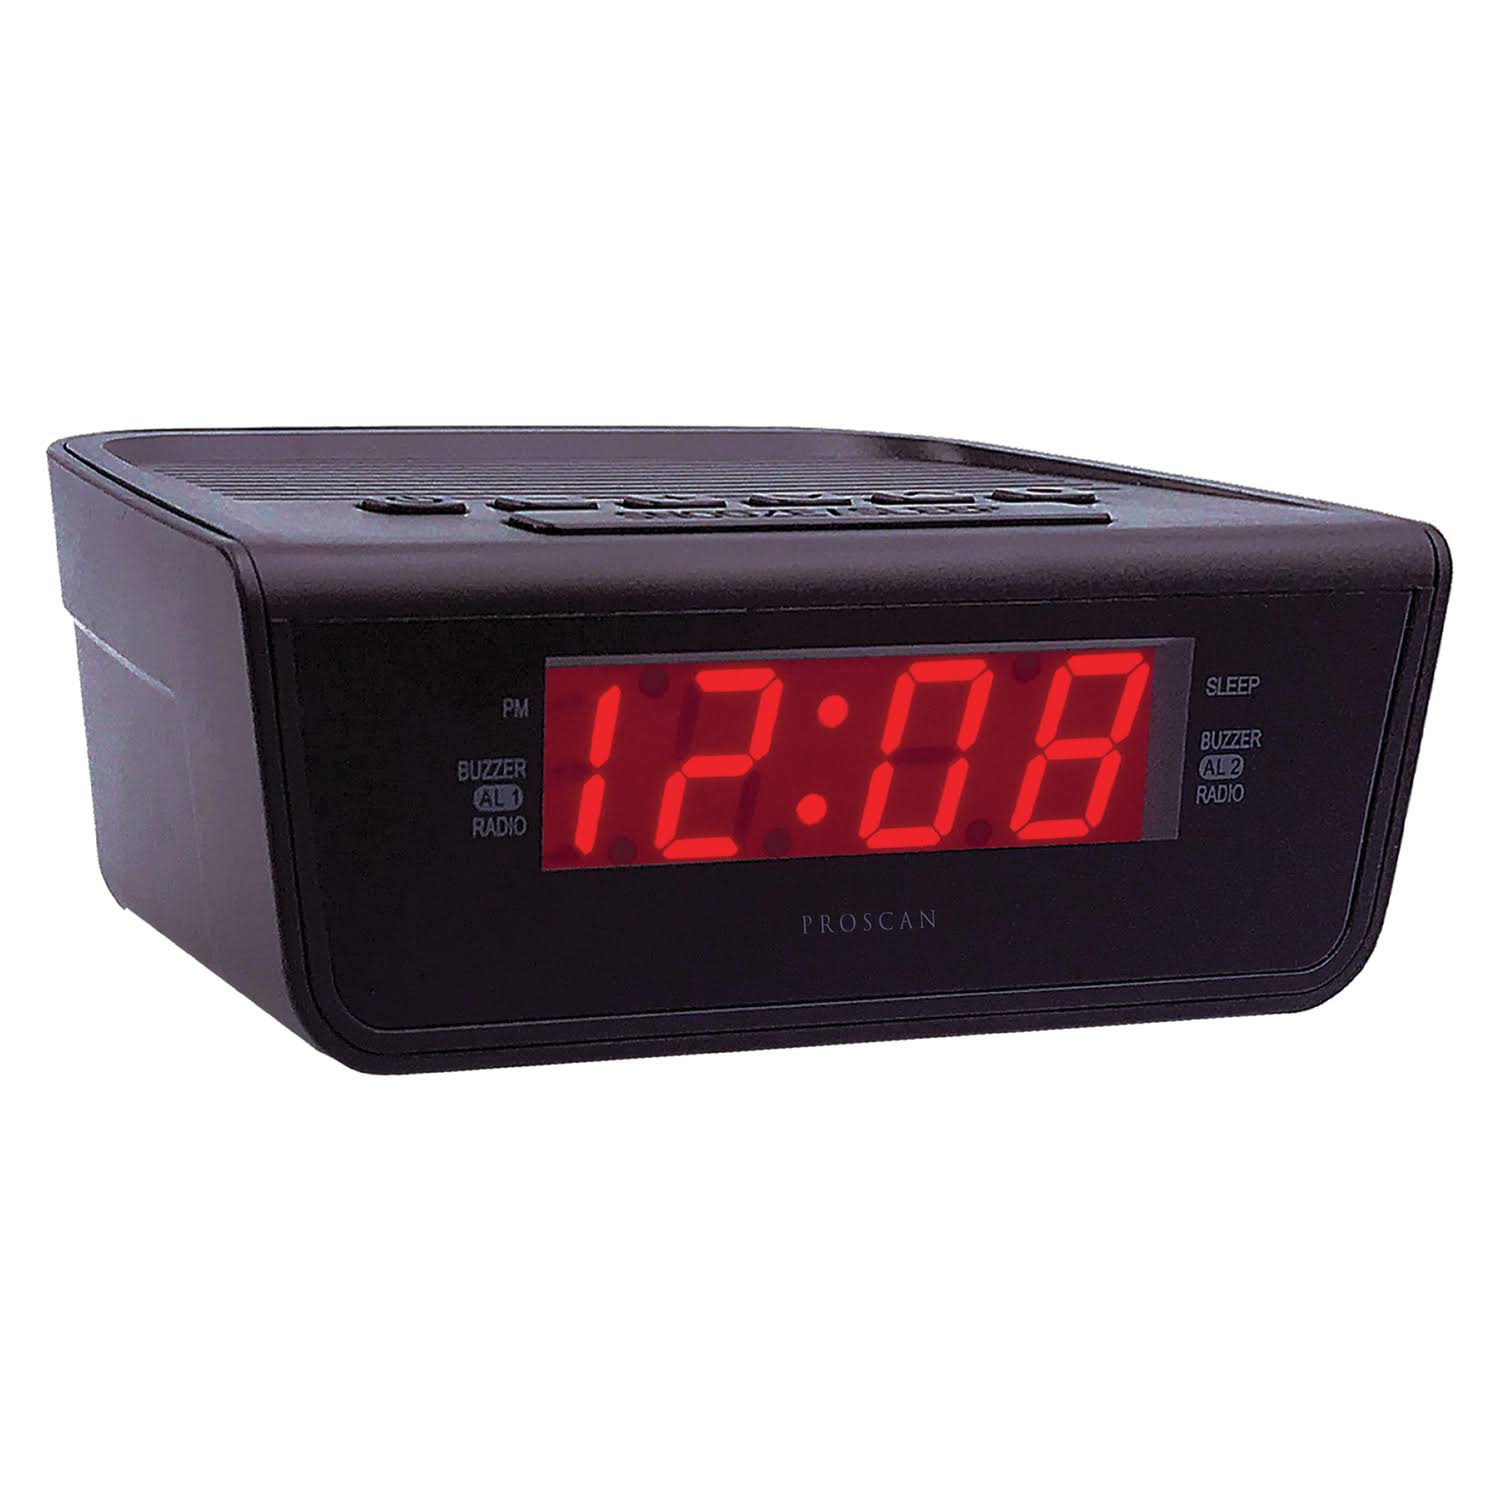 Proscan PCR1388 AM-FM Dual-Alarm Clock Radio with 0.6 in. LED Display